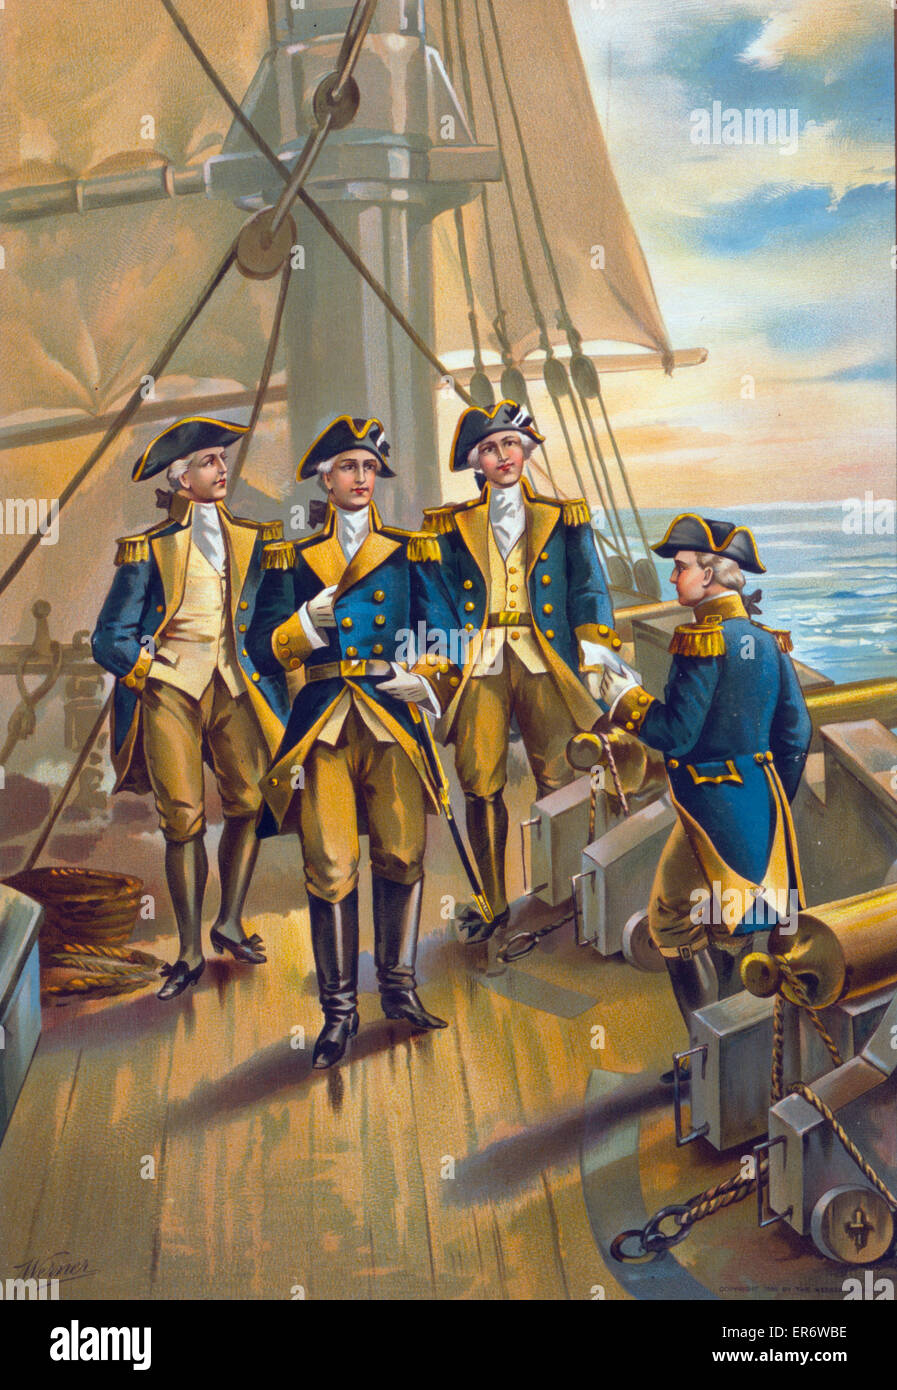 US Navy - Commandant en chef de la flotte - 1776. Commandant en chef de la Marine sur le pont du navire avec trois autres employés de la marine. Date c1899. Banque D'Images